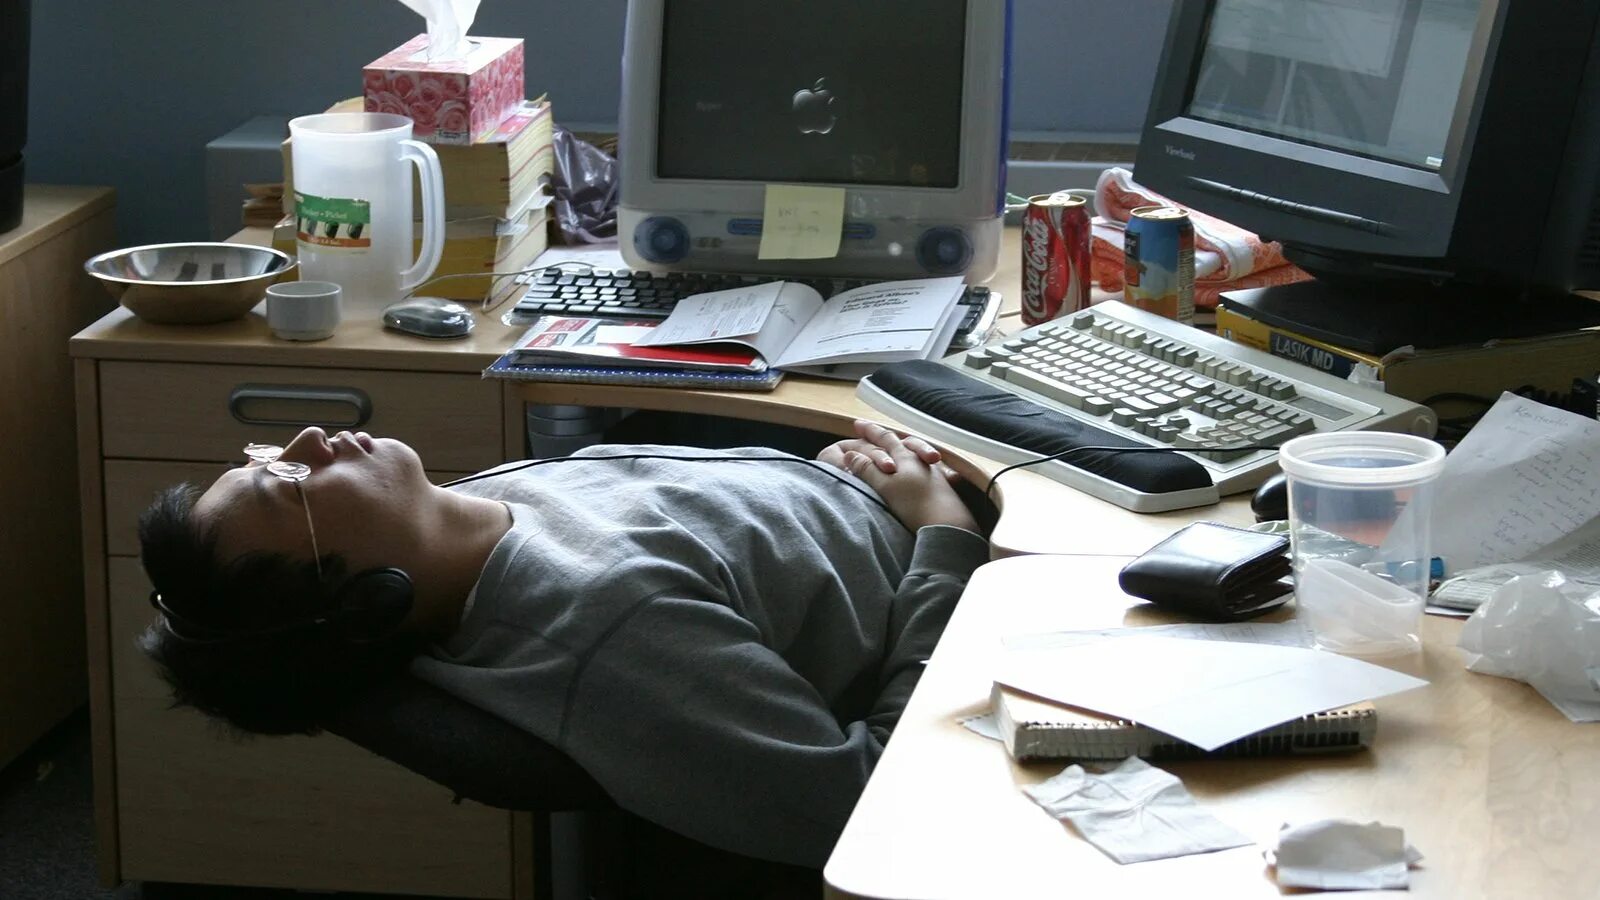 Переработка на работе. Спит на работе. Сон на рабочем месте. Уставший человек за компьютером. Спит на рабочем месте.